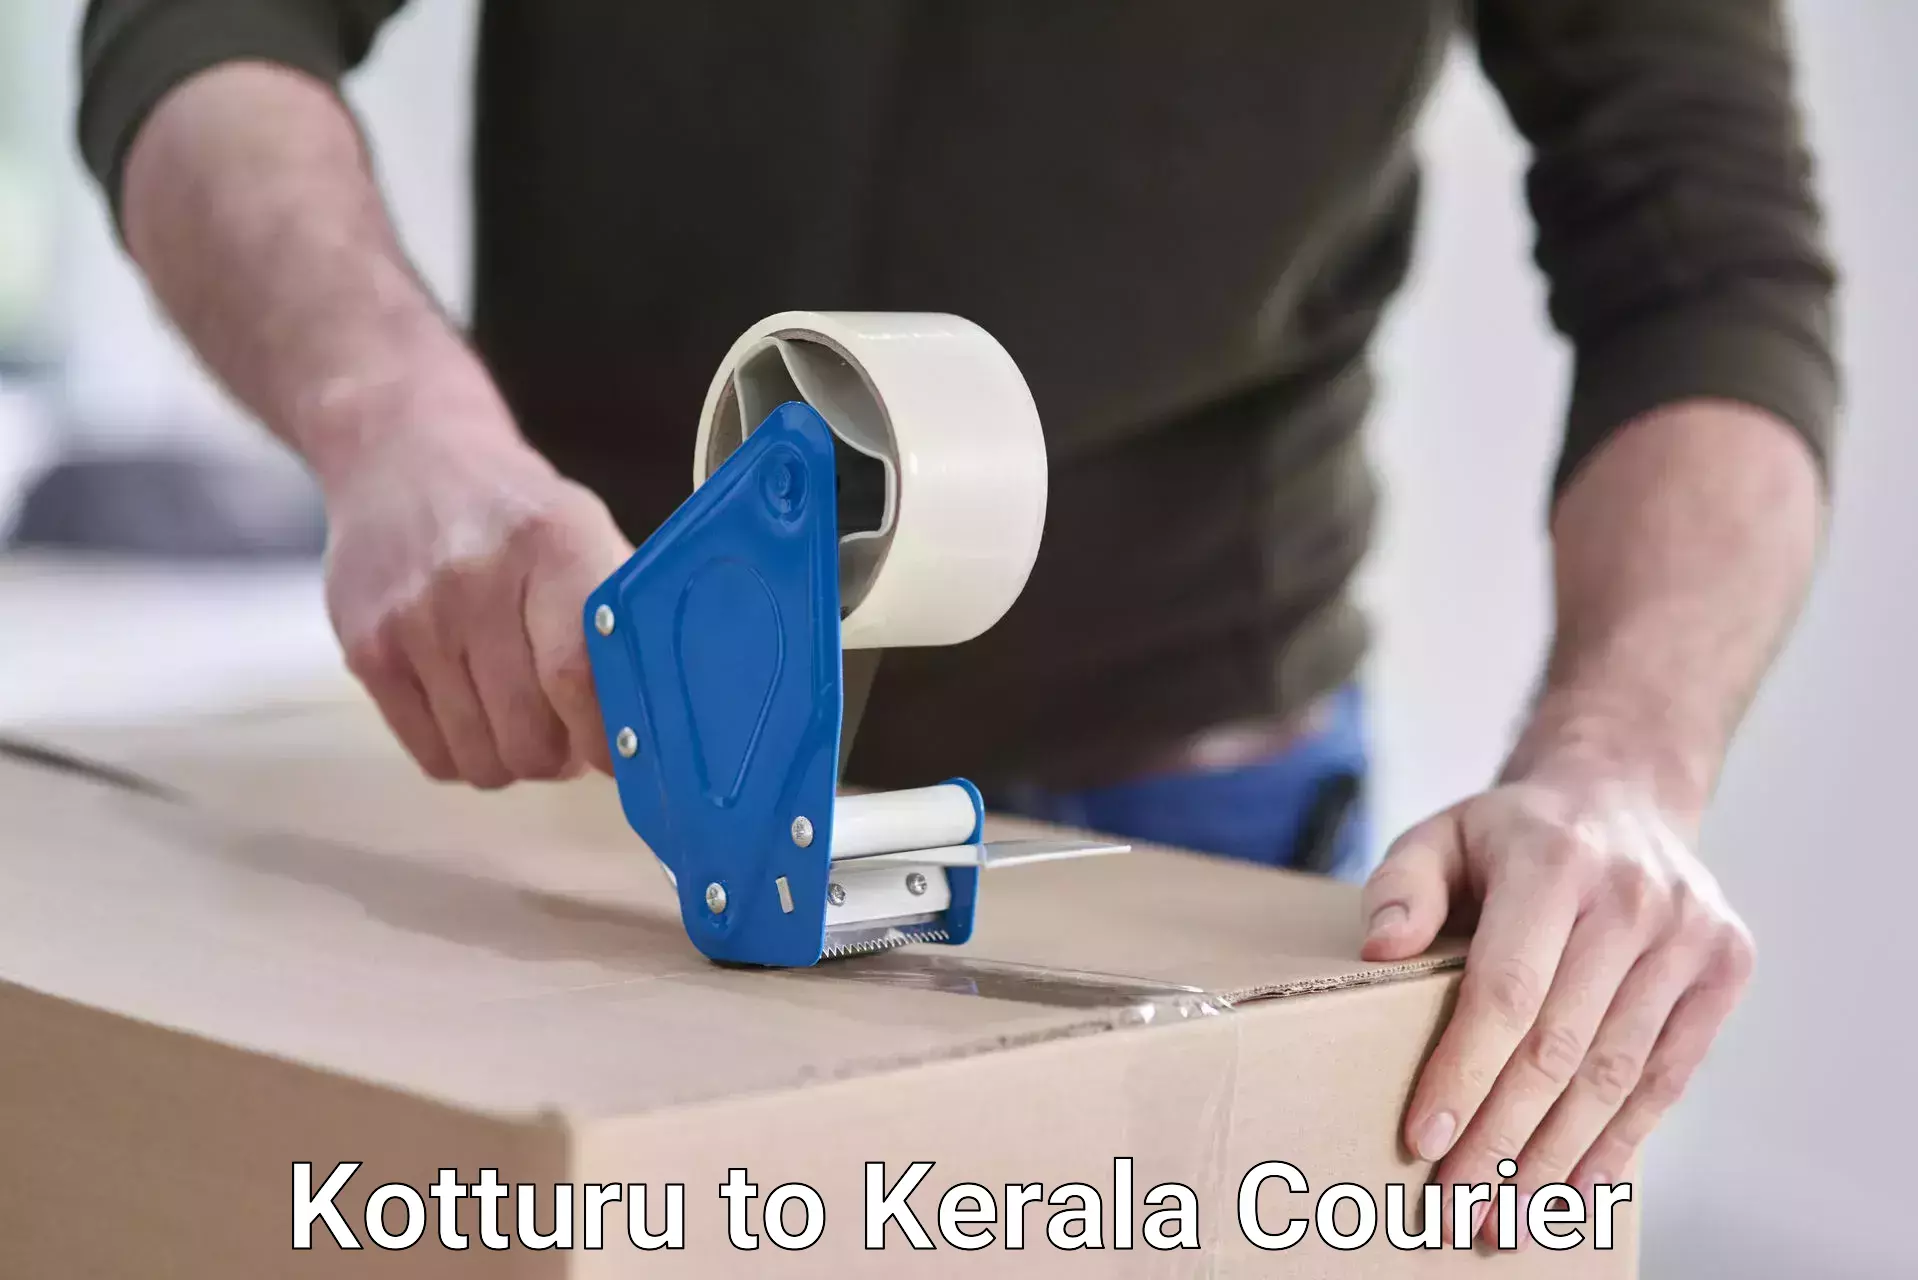 Customizable shipping options in Kotturu to Edavanna